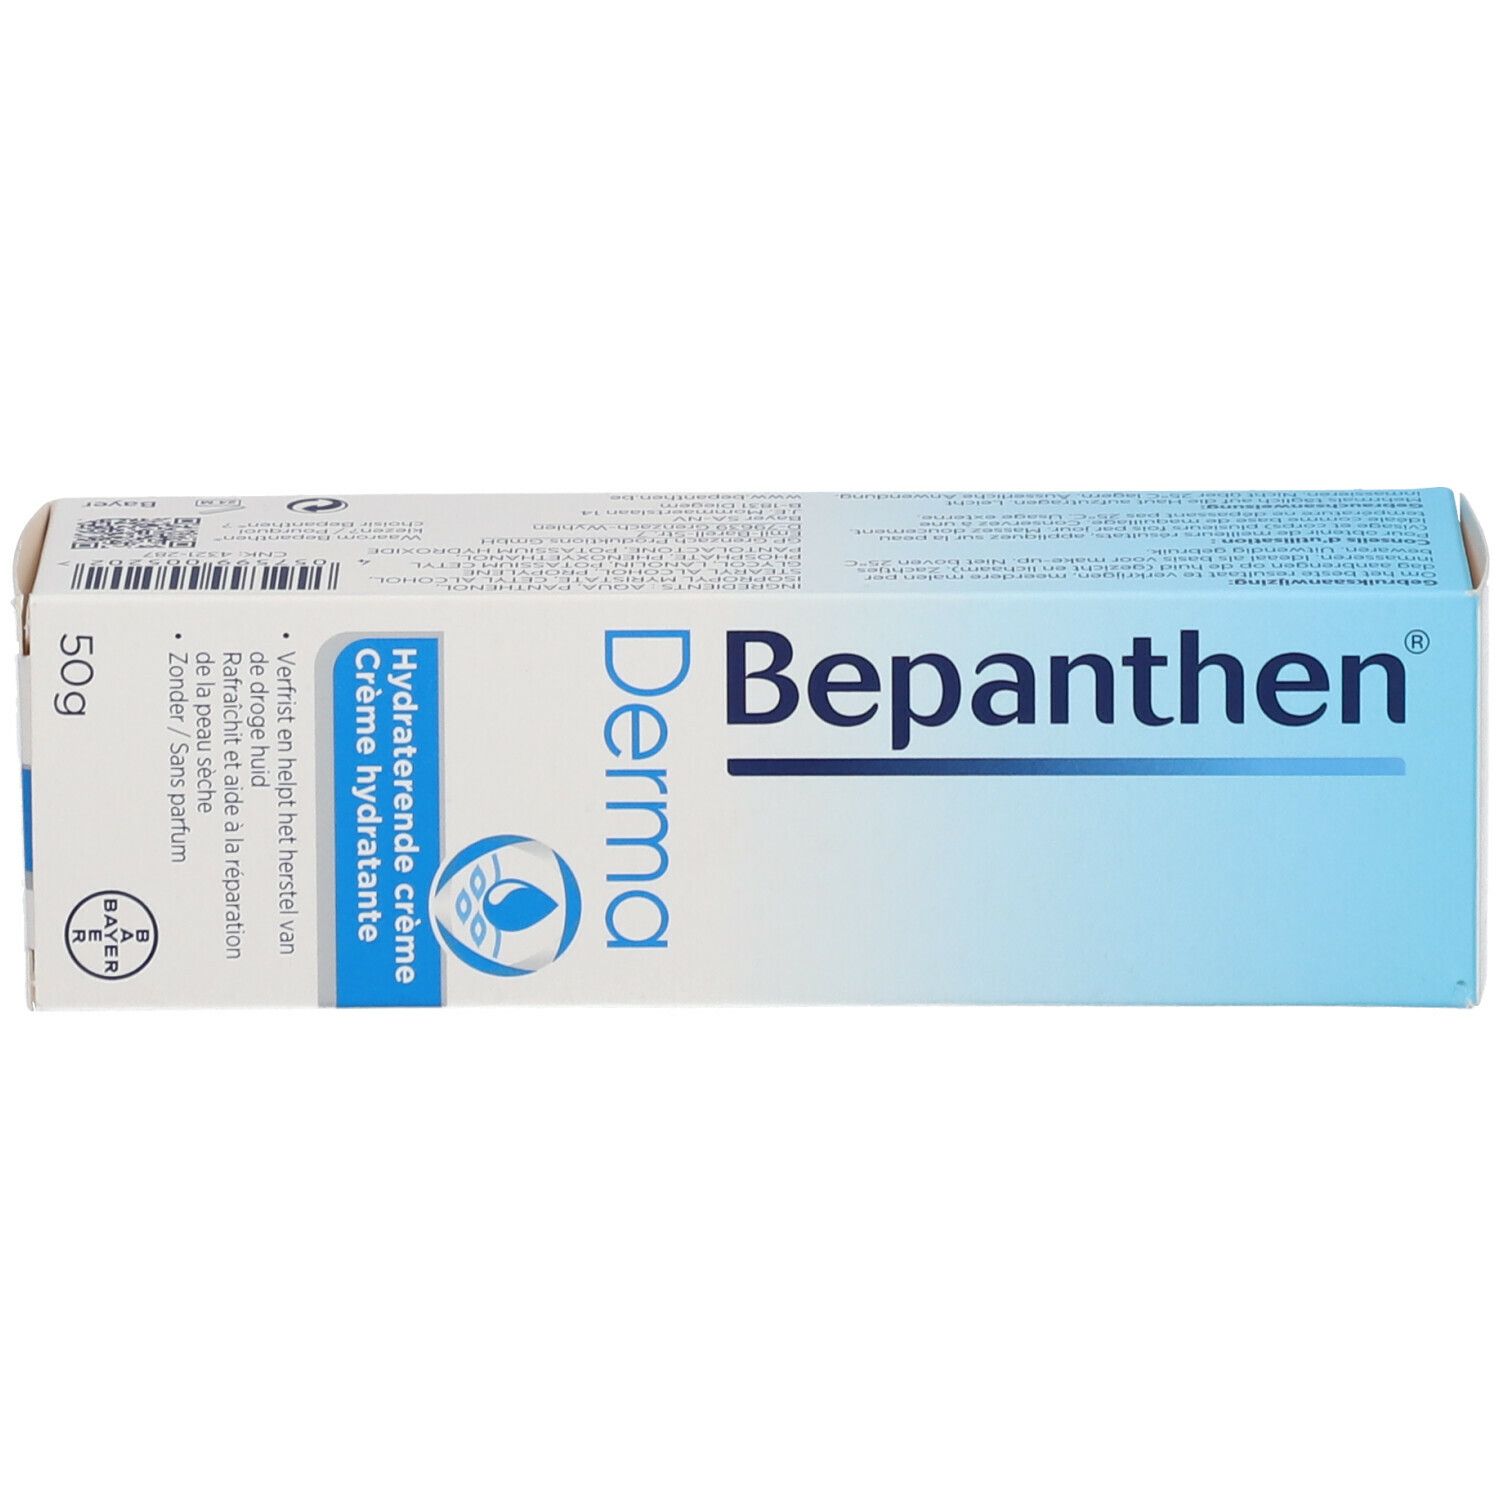 Bepanthen® Derma Feuchtigkeitscreme